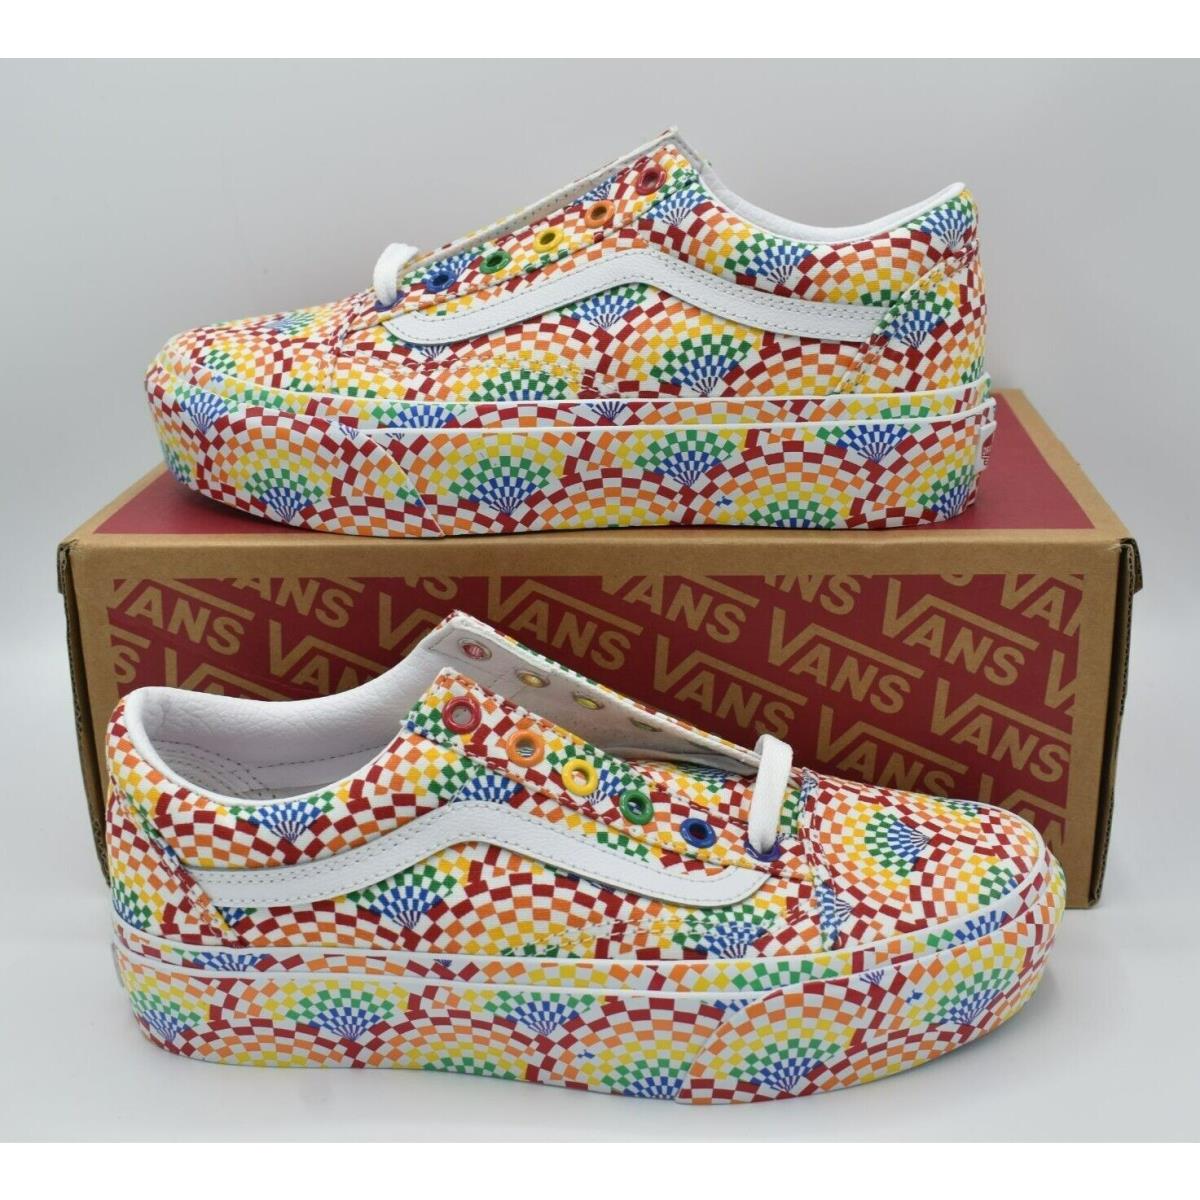 Vans Womens Size 9.5 Old Skool Multicolored Pride Lgbtq+ Platform Sneakers Shoes